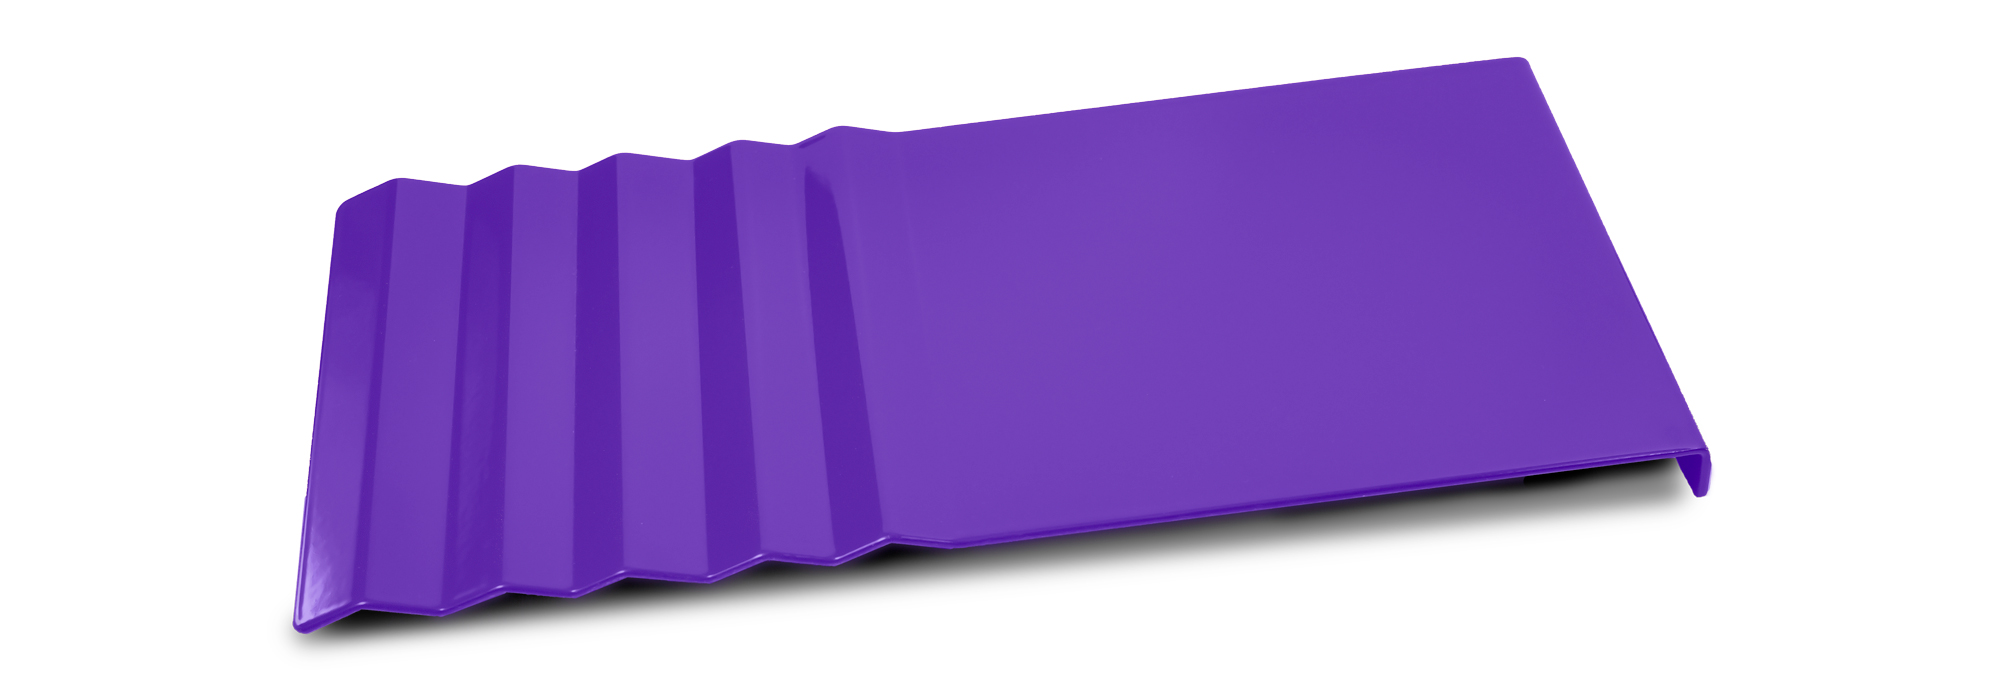 minnesota vikings purple